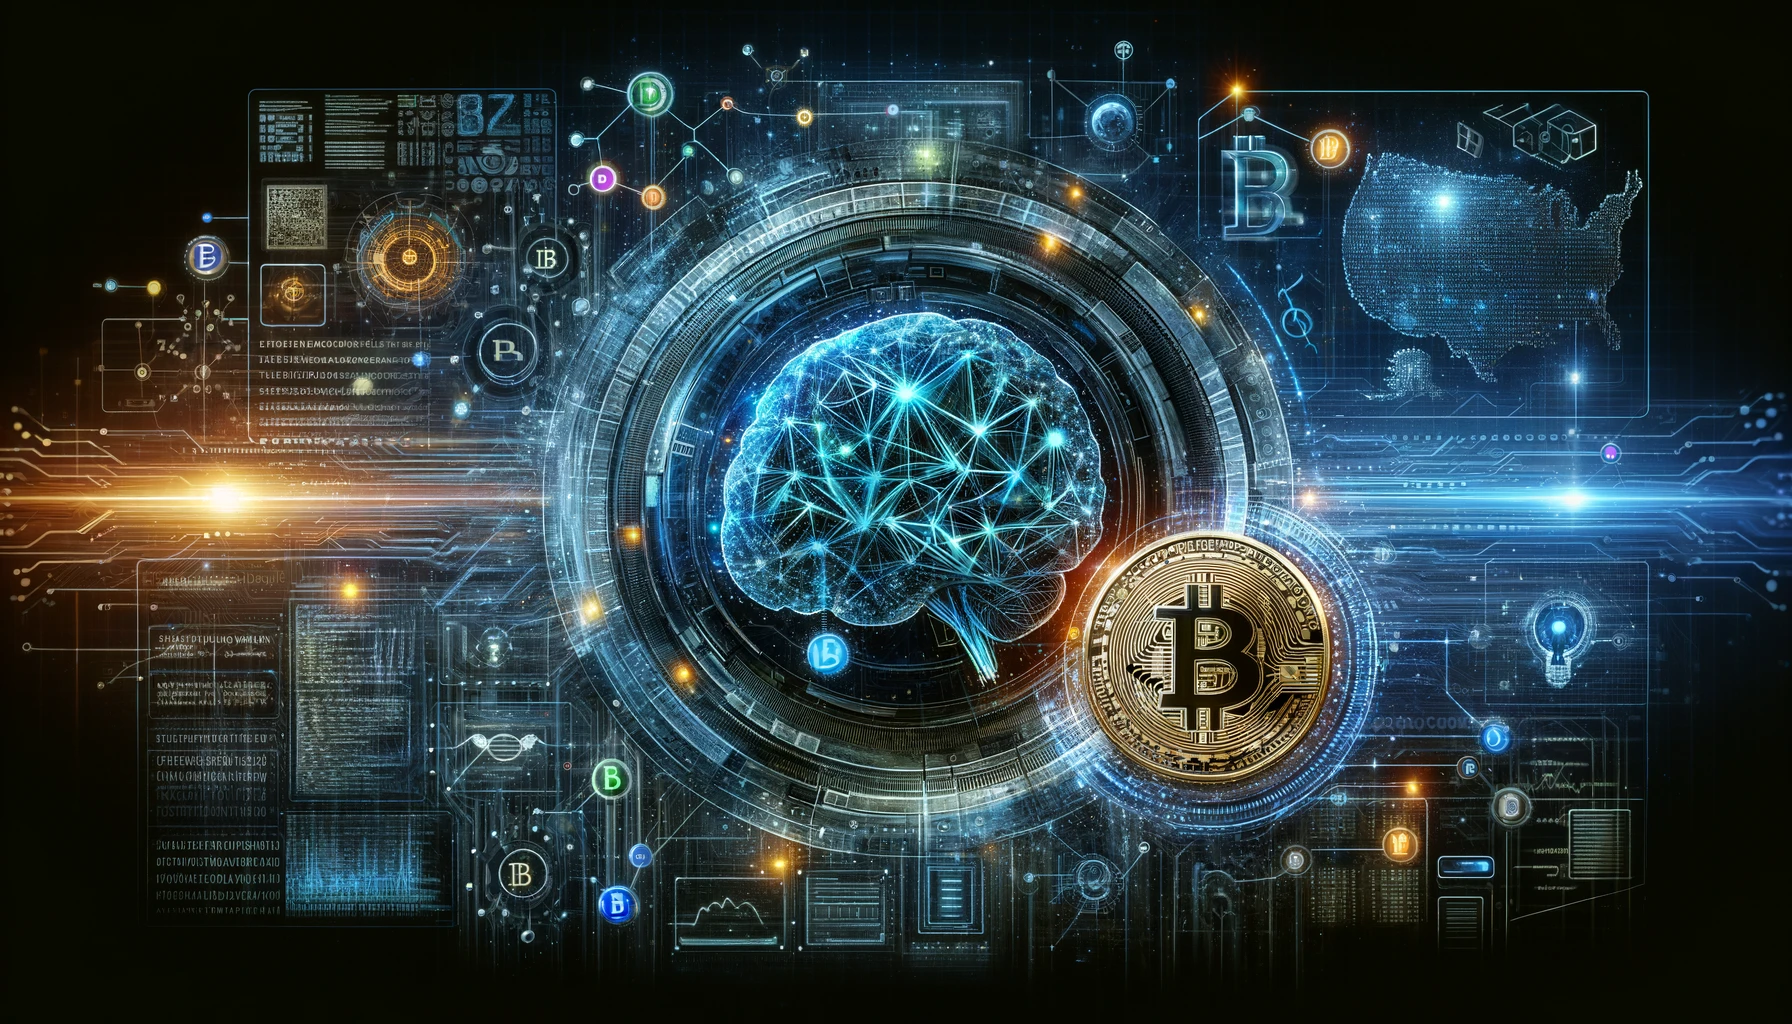 Sztuczna inteligencja jako mózg i Bitcoin